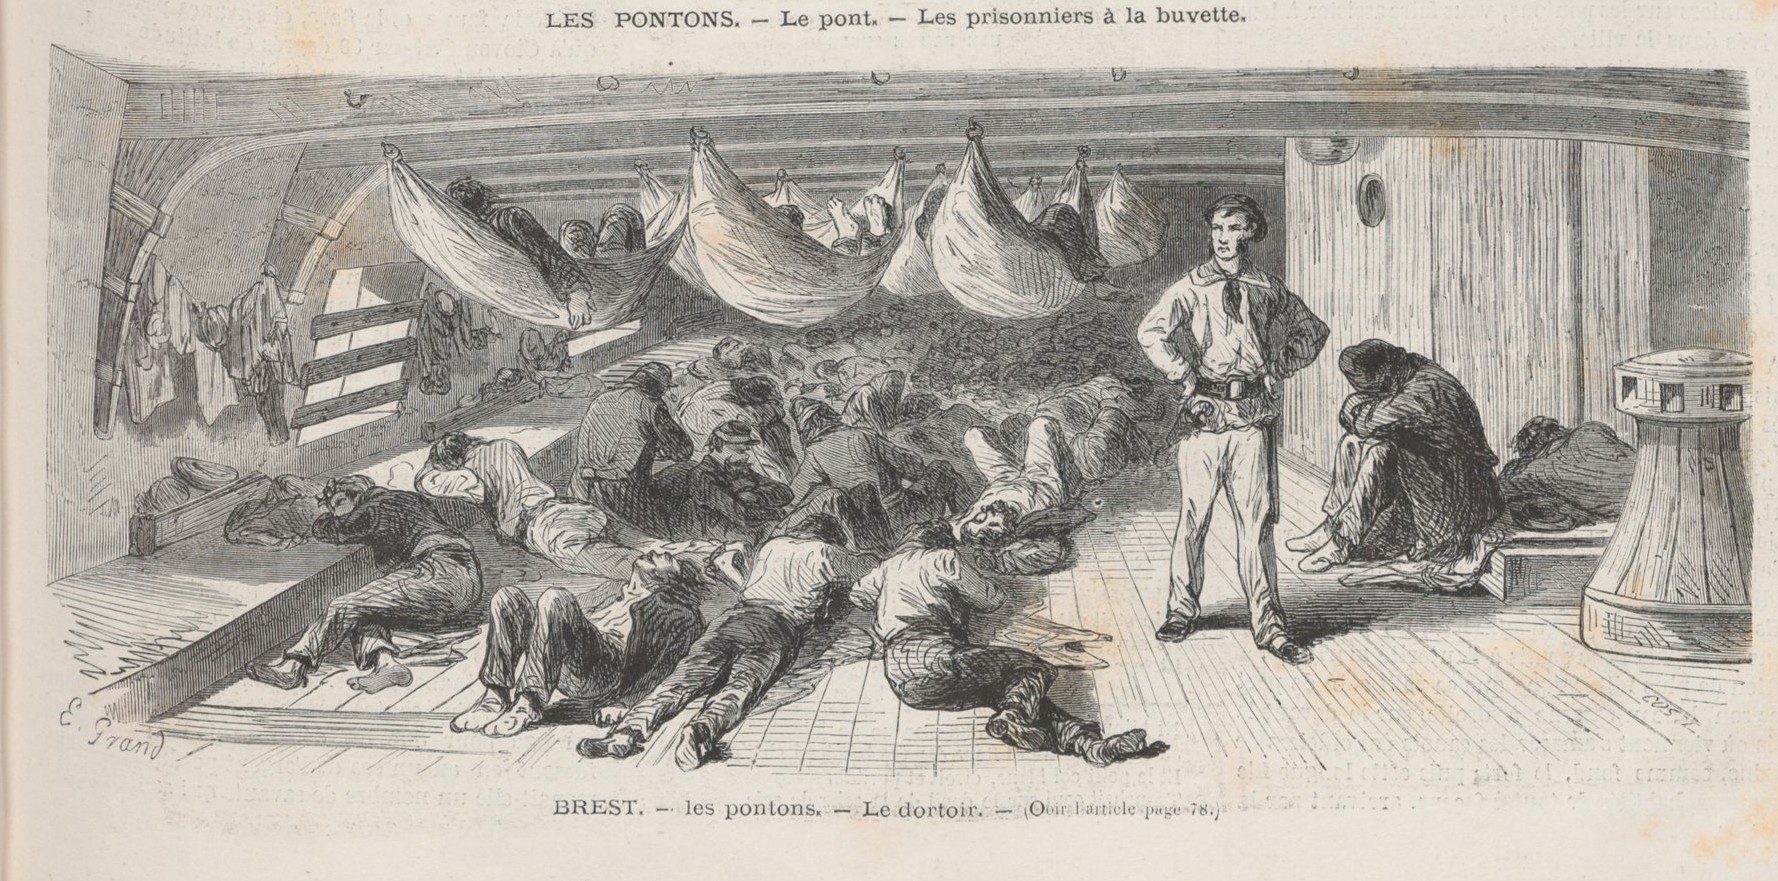 Les pontons, le dortoir. Le Monde Illustré du 29 juillet 1871. Dessin de Grand